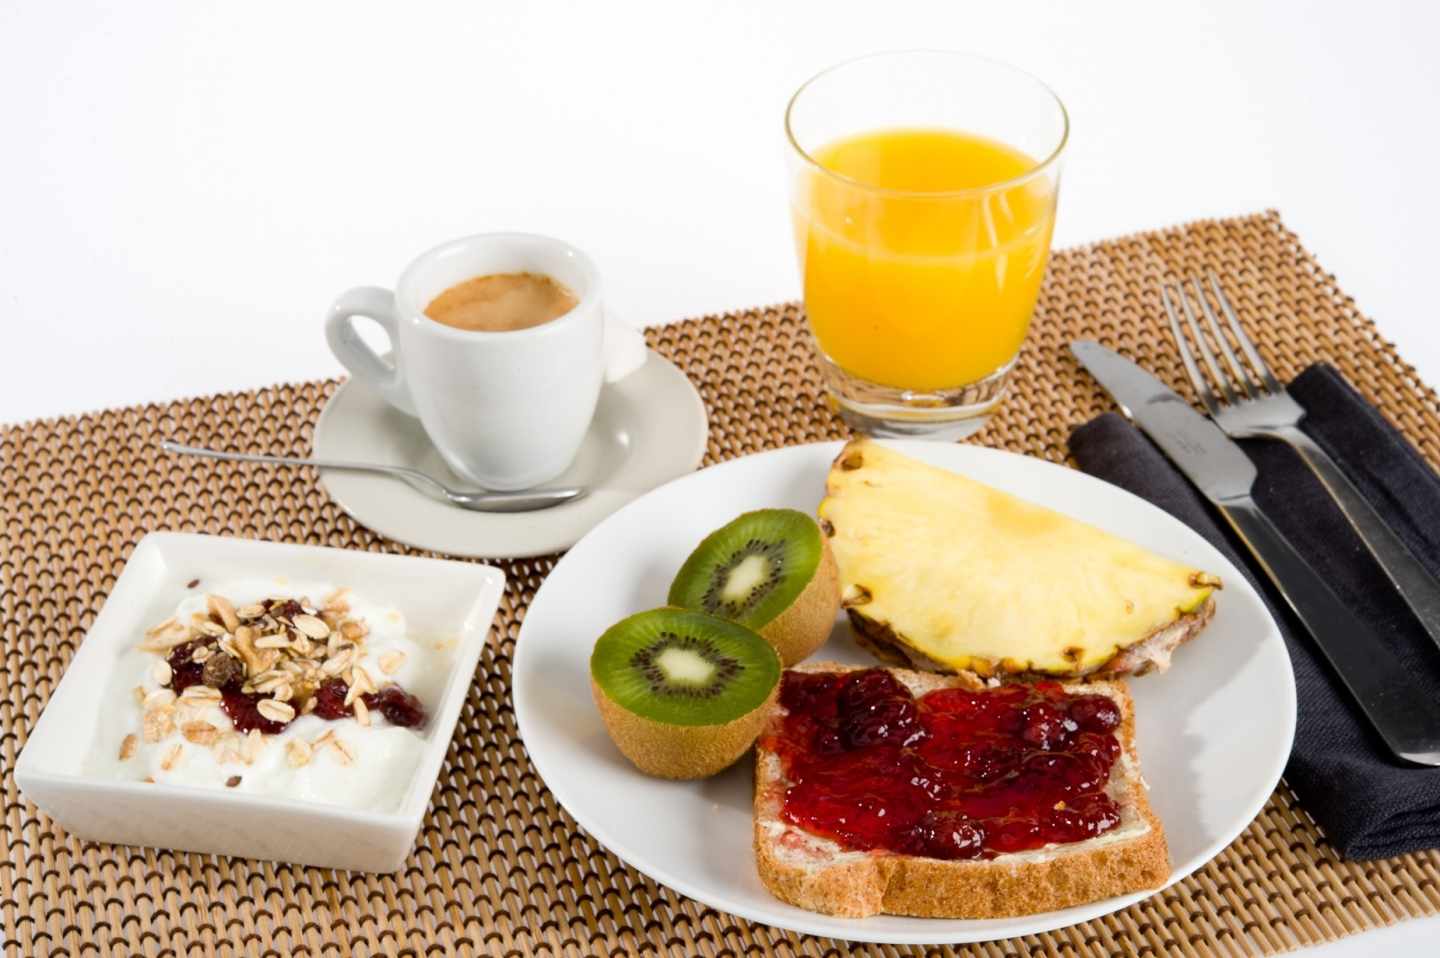 Sólo uno de cada cuatro personas realizan un desayuno completo.